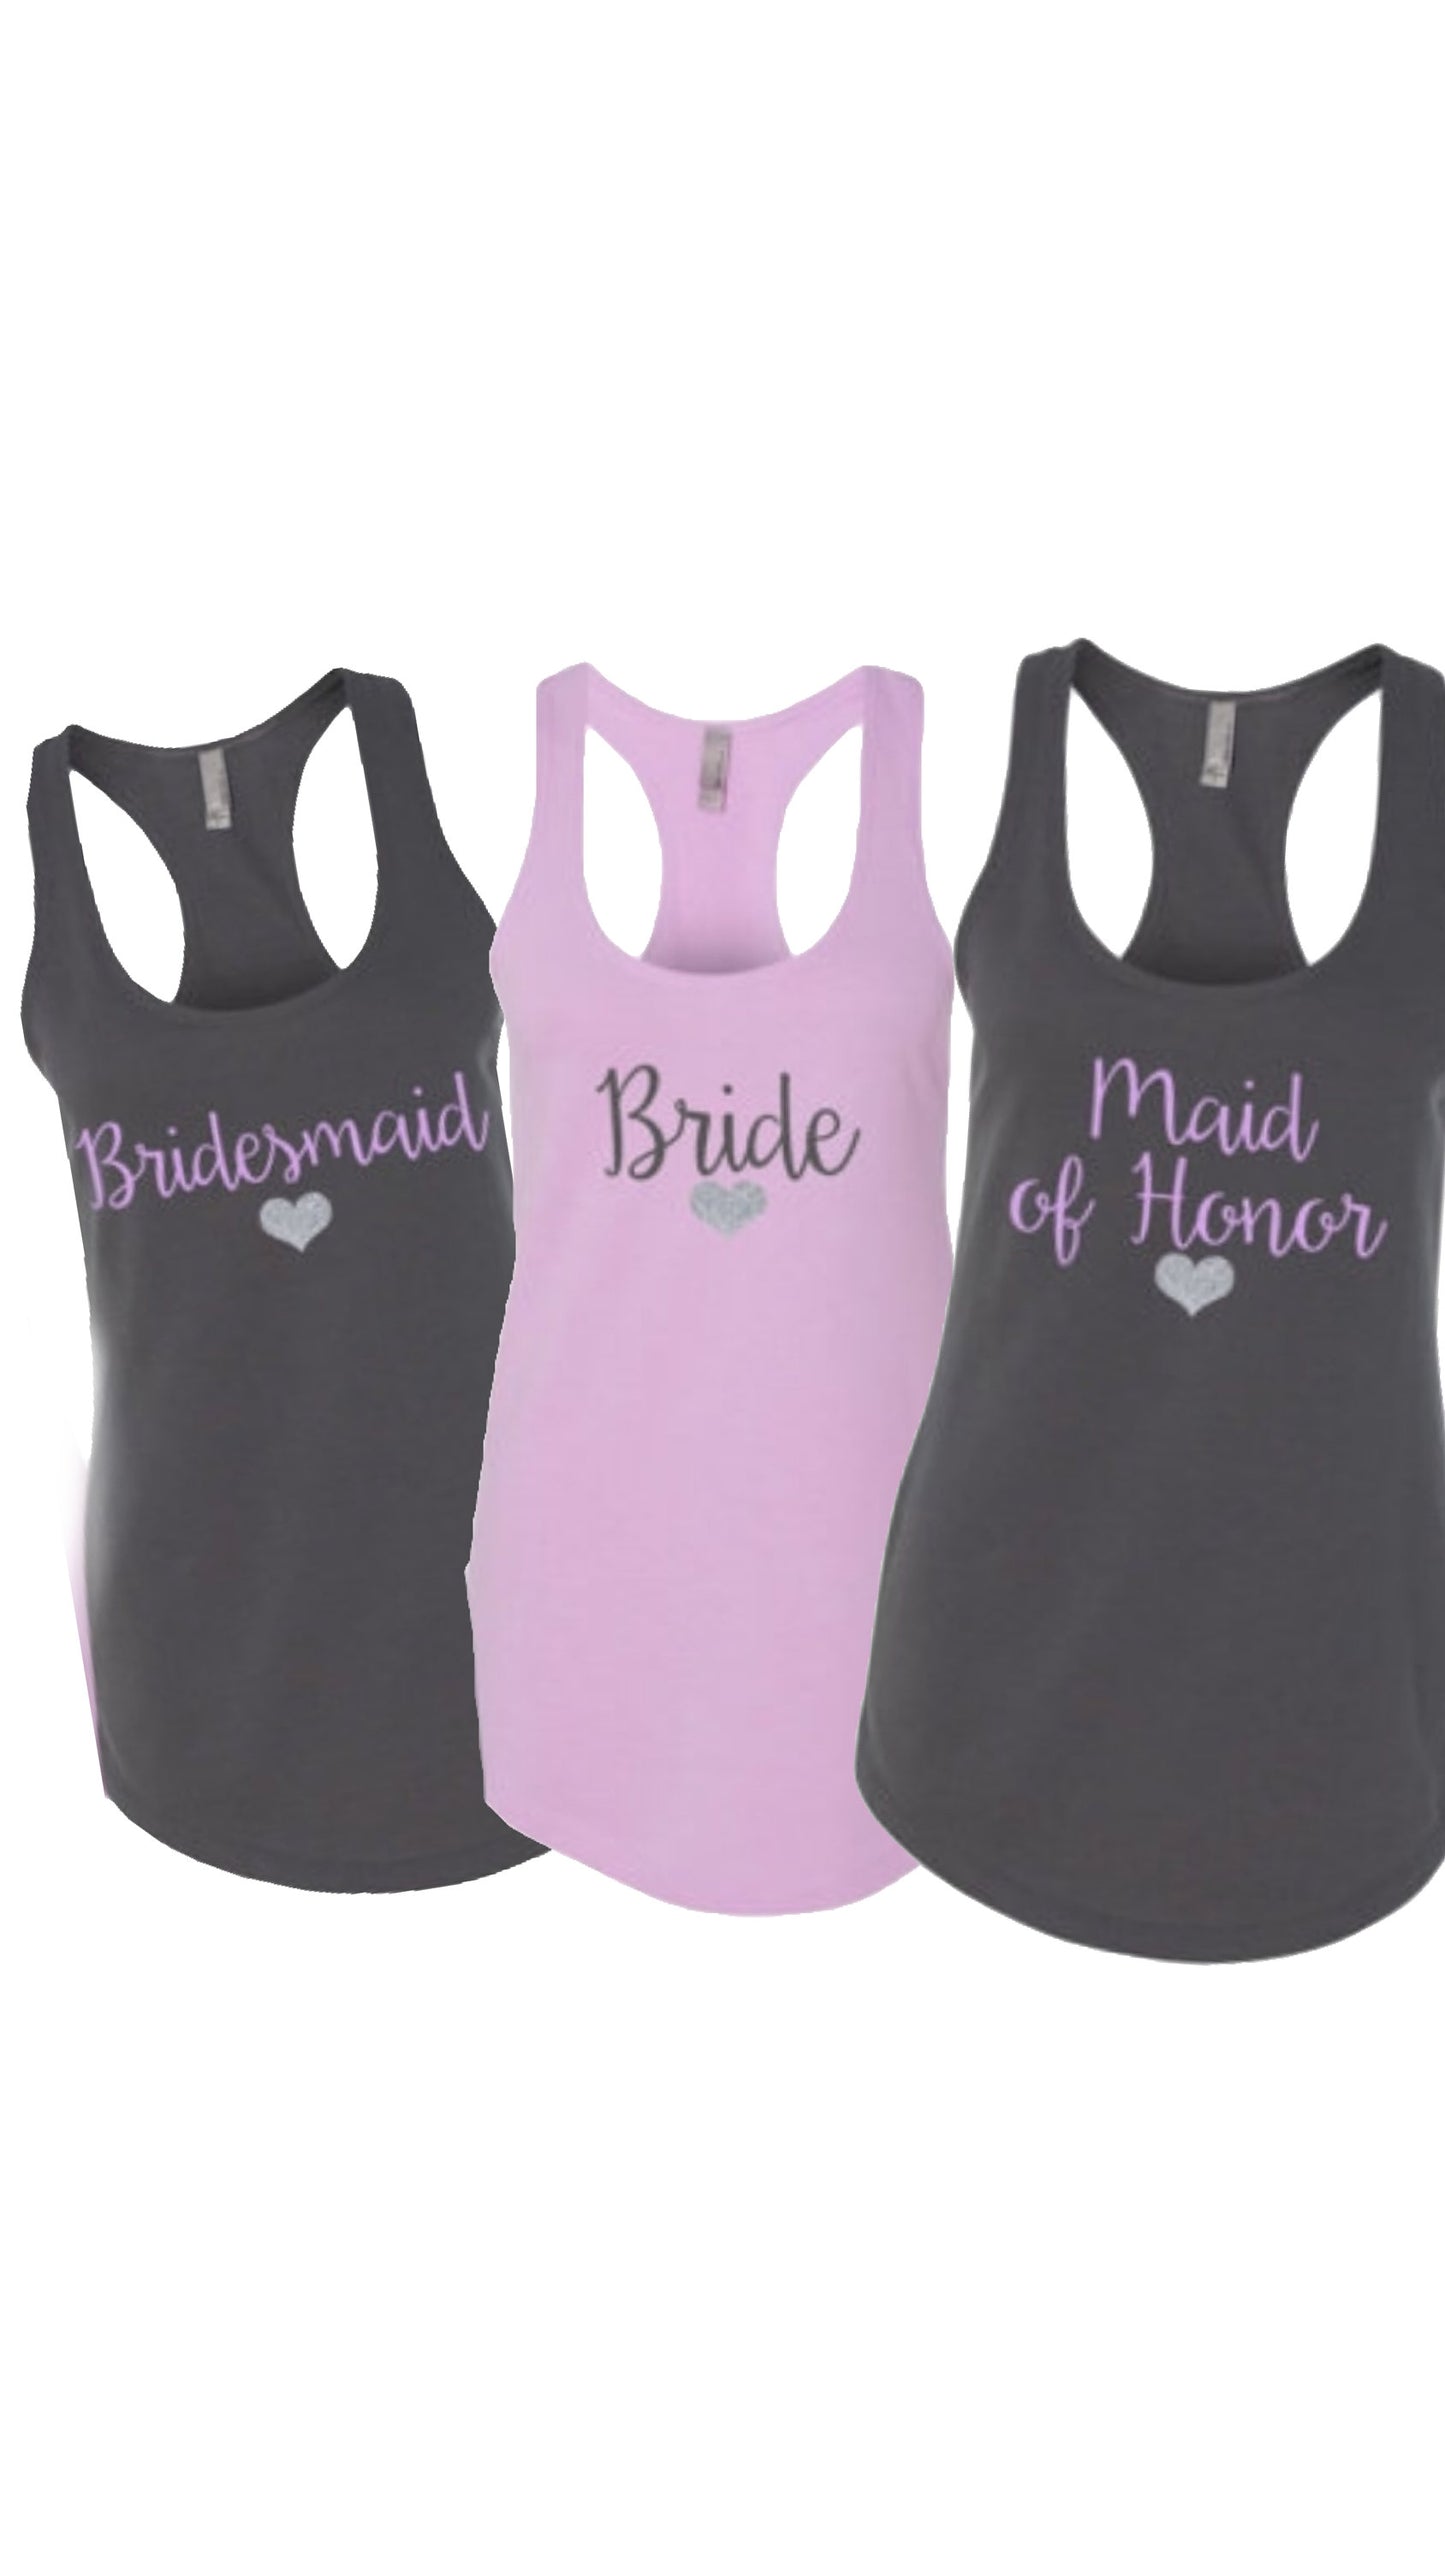 Bride and bridesmaid shirts, bridesmaid shirts, bride shirt, bride and co shirts, bridesmaid shirts, bachelorette weekend, Nashville Bachelo